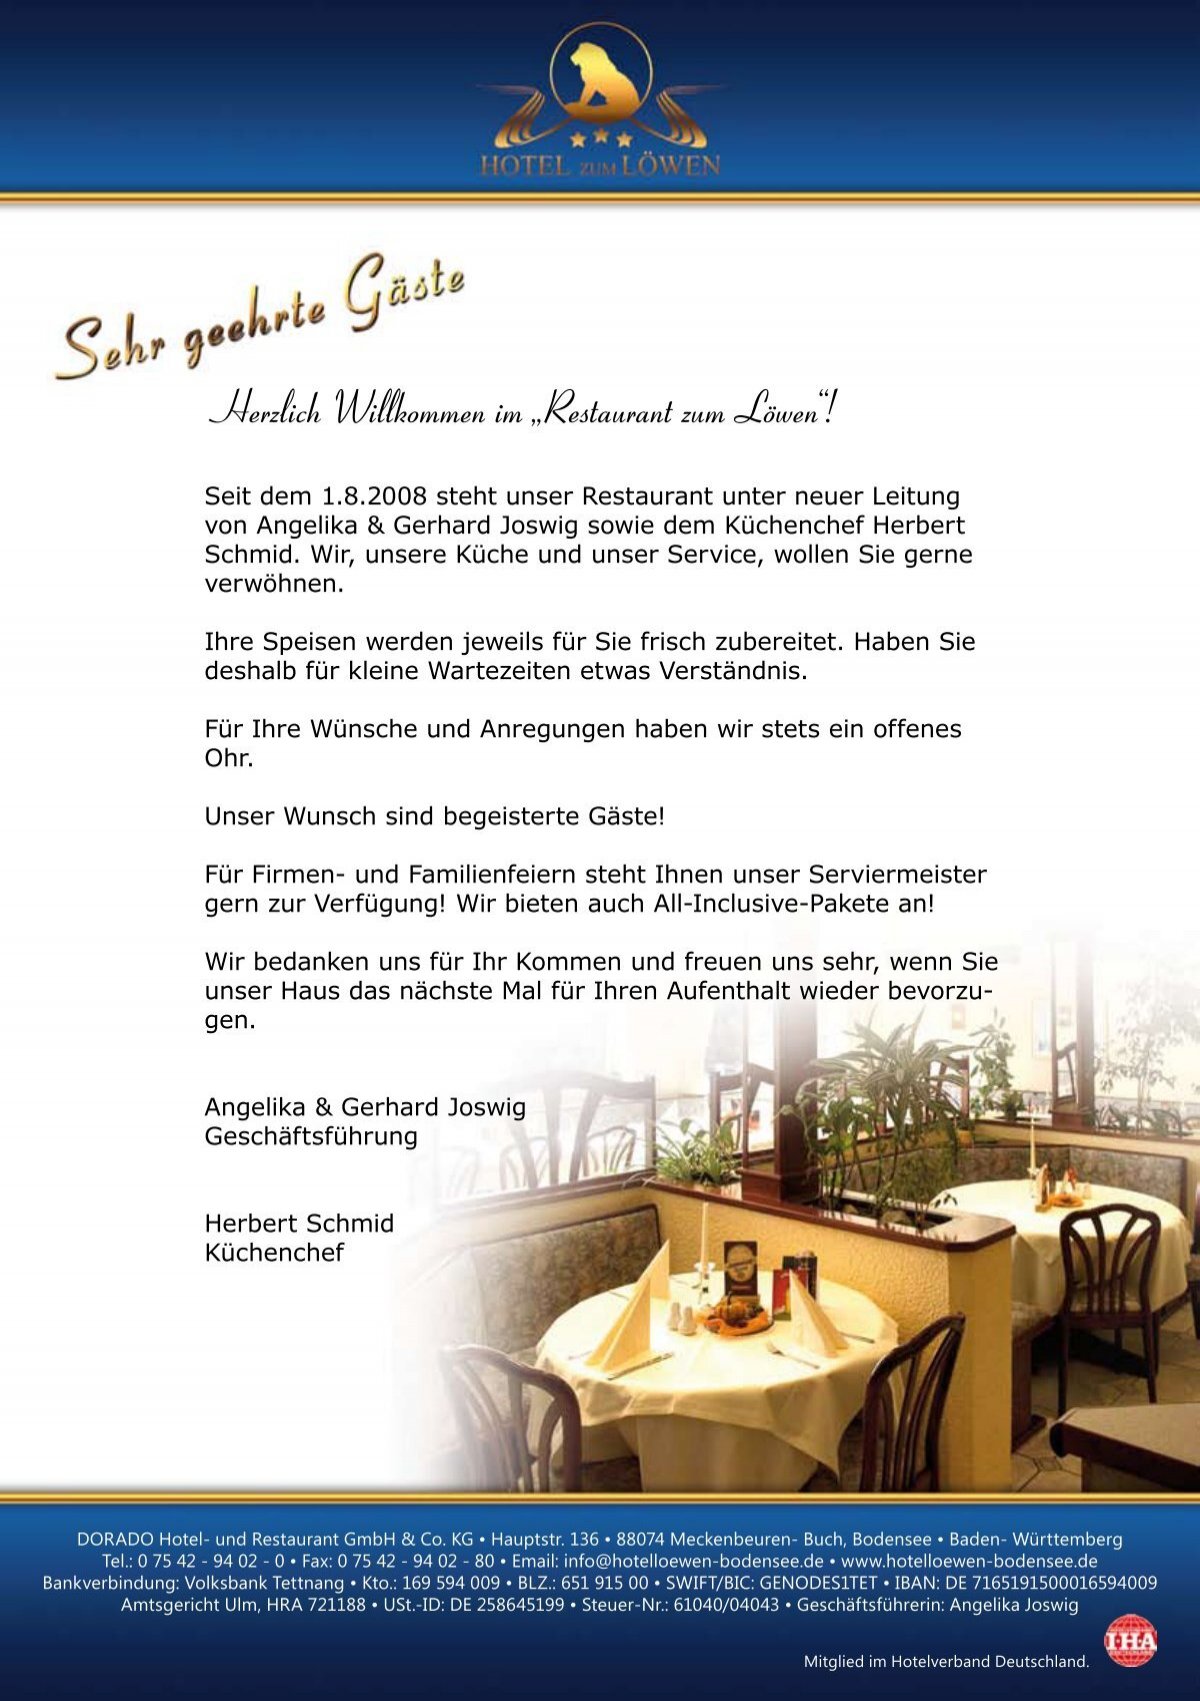 Herzlich Willkommen Im A A Azrestaurant Zum Laƒa Wena A Aœ Hotel Bodensee